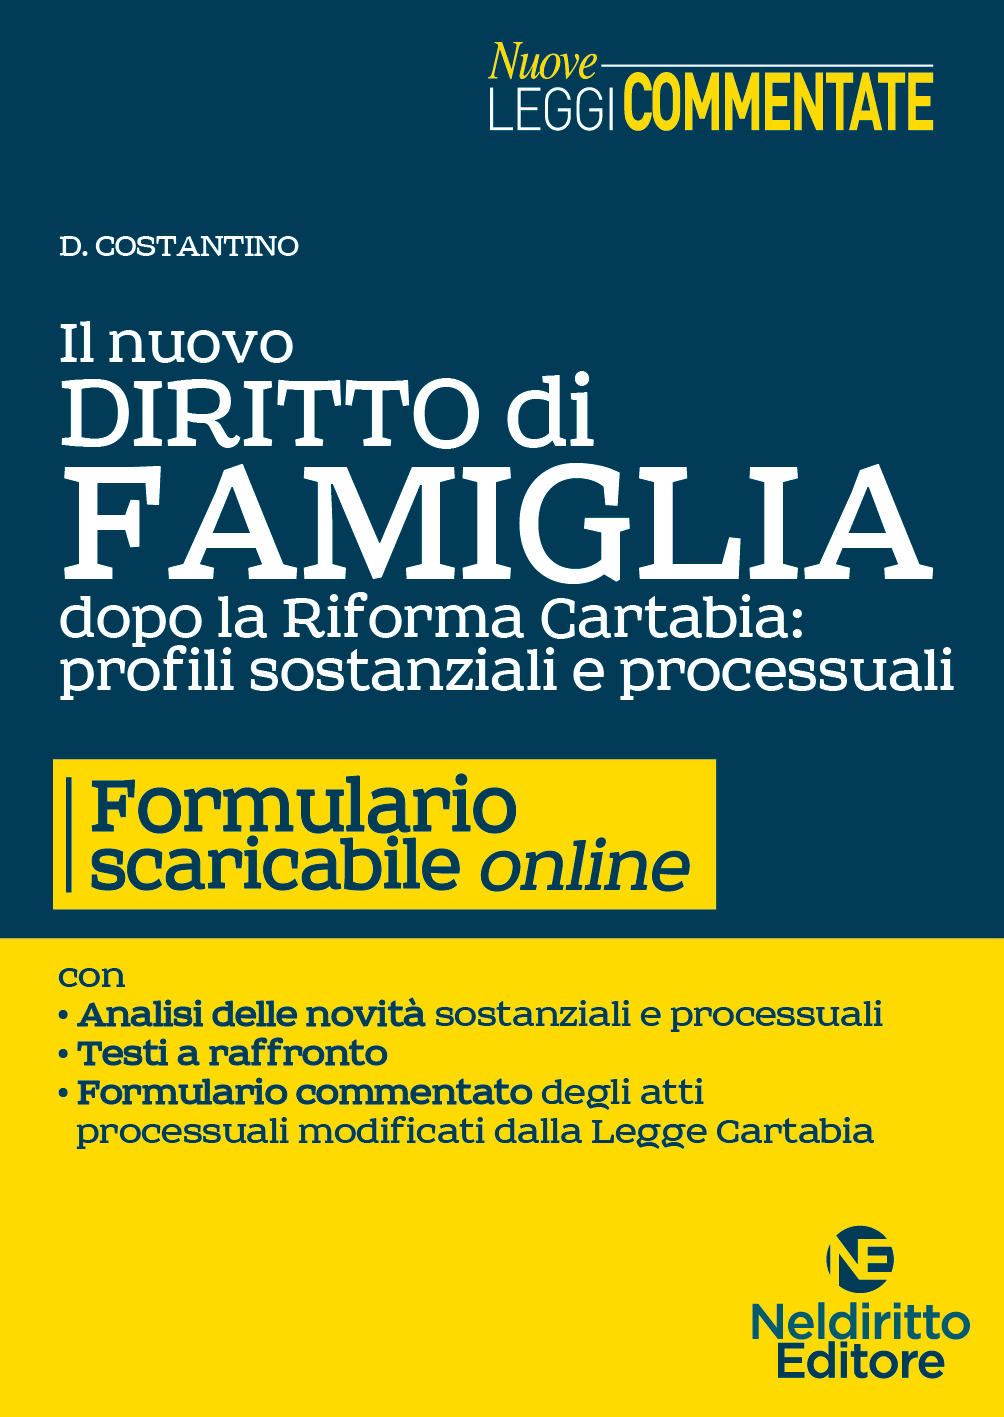 Il Nuovo Diritto di Famiglia dopo la Riforma Cartabia: profili sostanziali e Processuali con Formulario